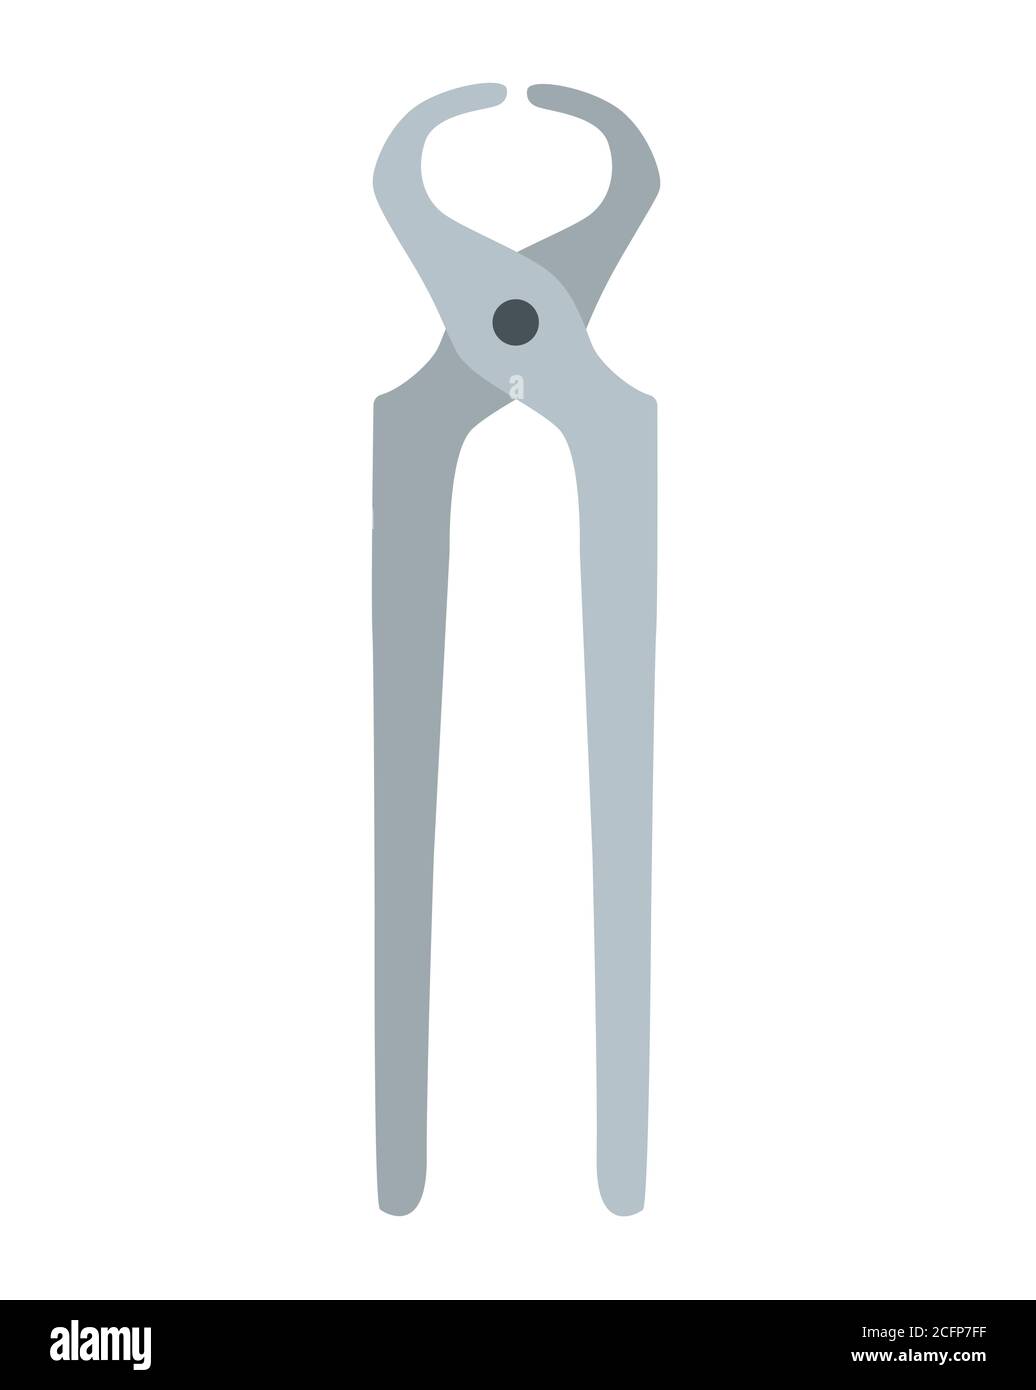 Zange für farbige Eisenschneidzangen. Werkzeugsymbol für Stahlzangen. Grauer Griff. Flache Abbildung des Vektorsymbols für Zangen-Werkzeuge für Webdesign. Stock Vektor